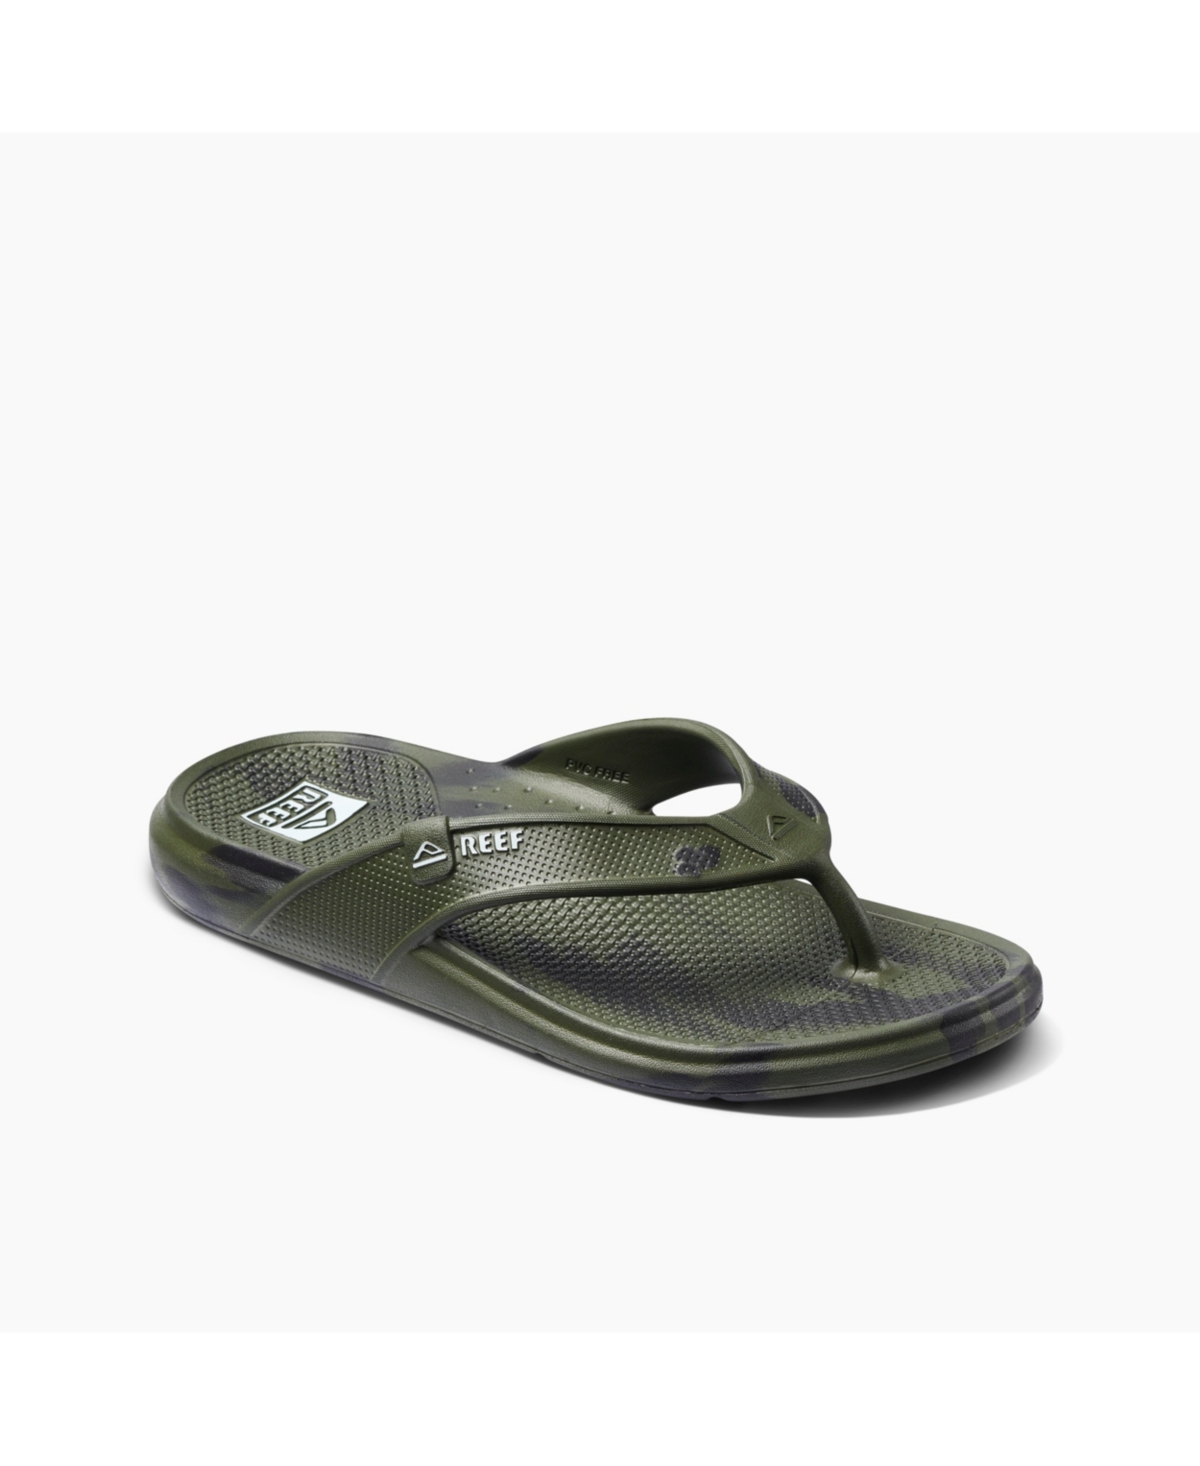 Men's Oasis Comfort Fit Sandals - Olive Marble